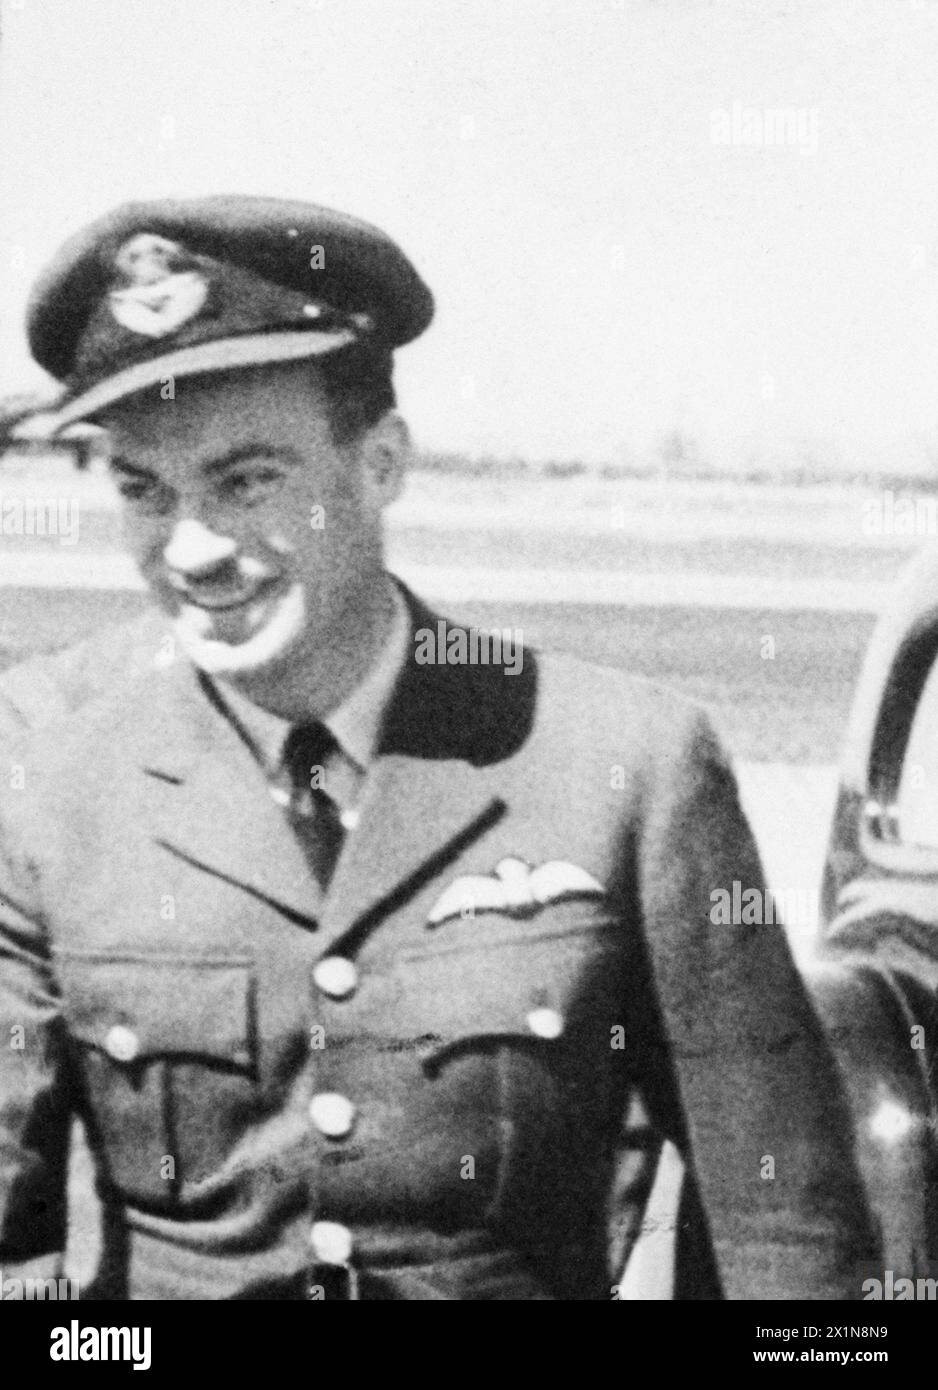 PRINCESS ROYAL VISITA LA MENSA Y.M.C.A. CHE SERVE LA STAZIONE BOMBER. - 1944 foto IssuedAWARDED BAR TO DISTINGUISHED SERVICE ORDERActing Group Captain John Emilius FAUQUIER, D.S.O., D.F.C., (2° a destra) R.C.A.F. No. 405 (R.C.A.F.) Squadron. Questo ufficiale ha comandato lo squadrone con notevole successo negli ultimi nove mesi. Ha spesso partecipato a sortite contro obiettivi lontani e ben difesi. Inclusi diversi attacchi alla capitale tedesca. È un leader forte e valoroso, la cui eccezionale abilità e la devozione inscindibile al dovere si sono riflesse nel bel wor operativo Foto Stock